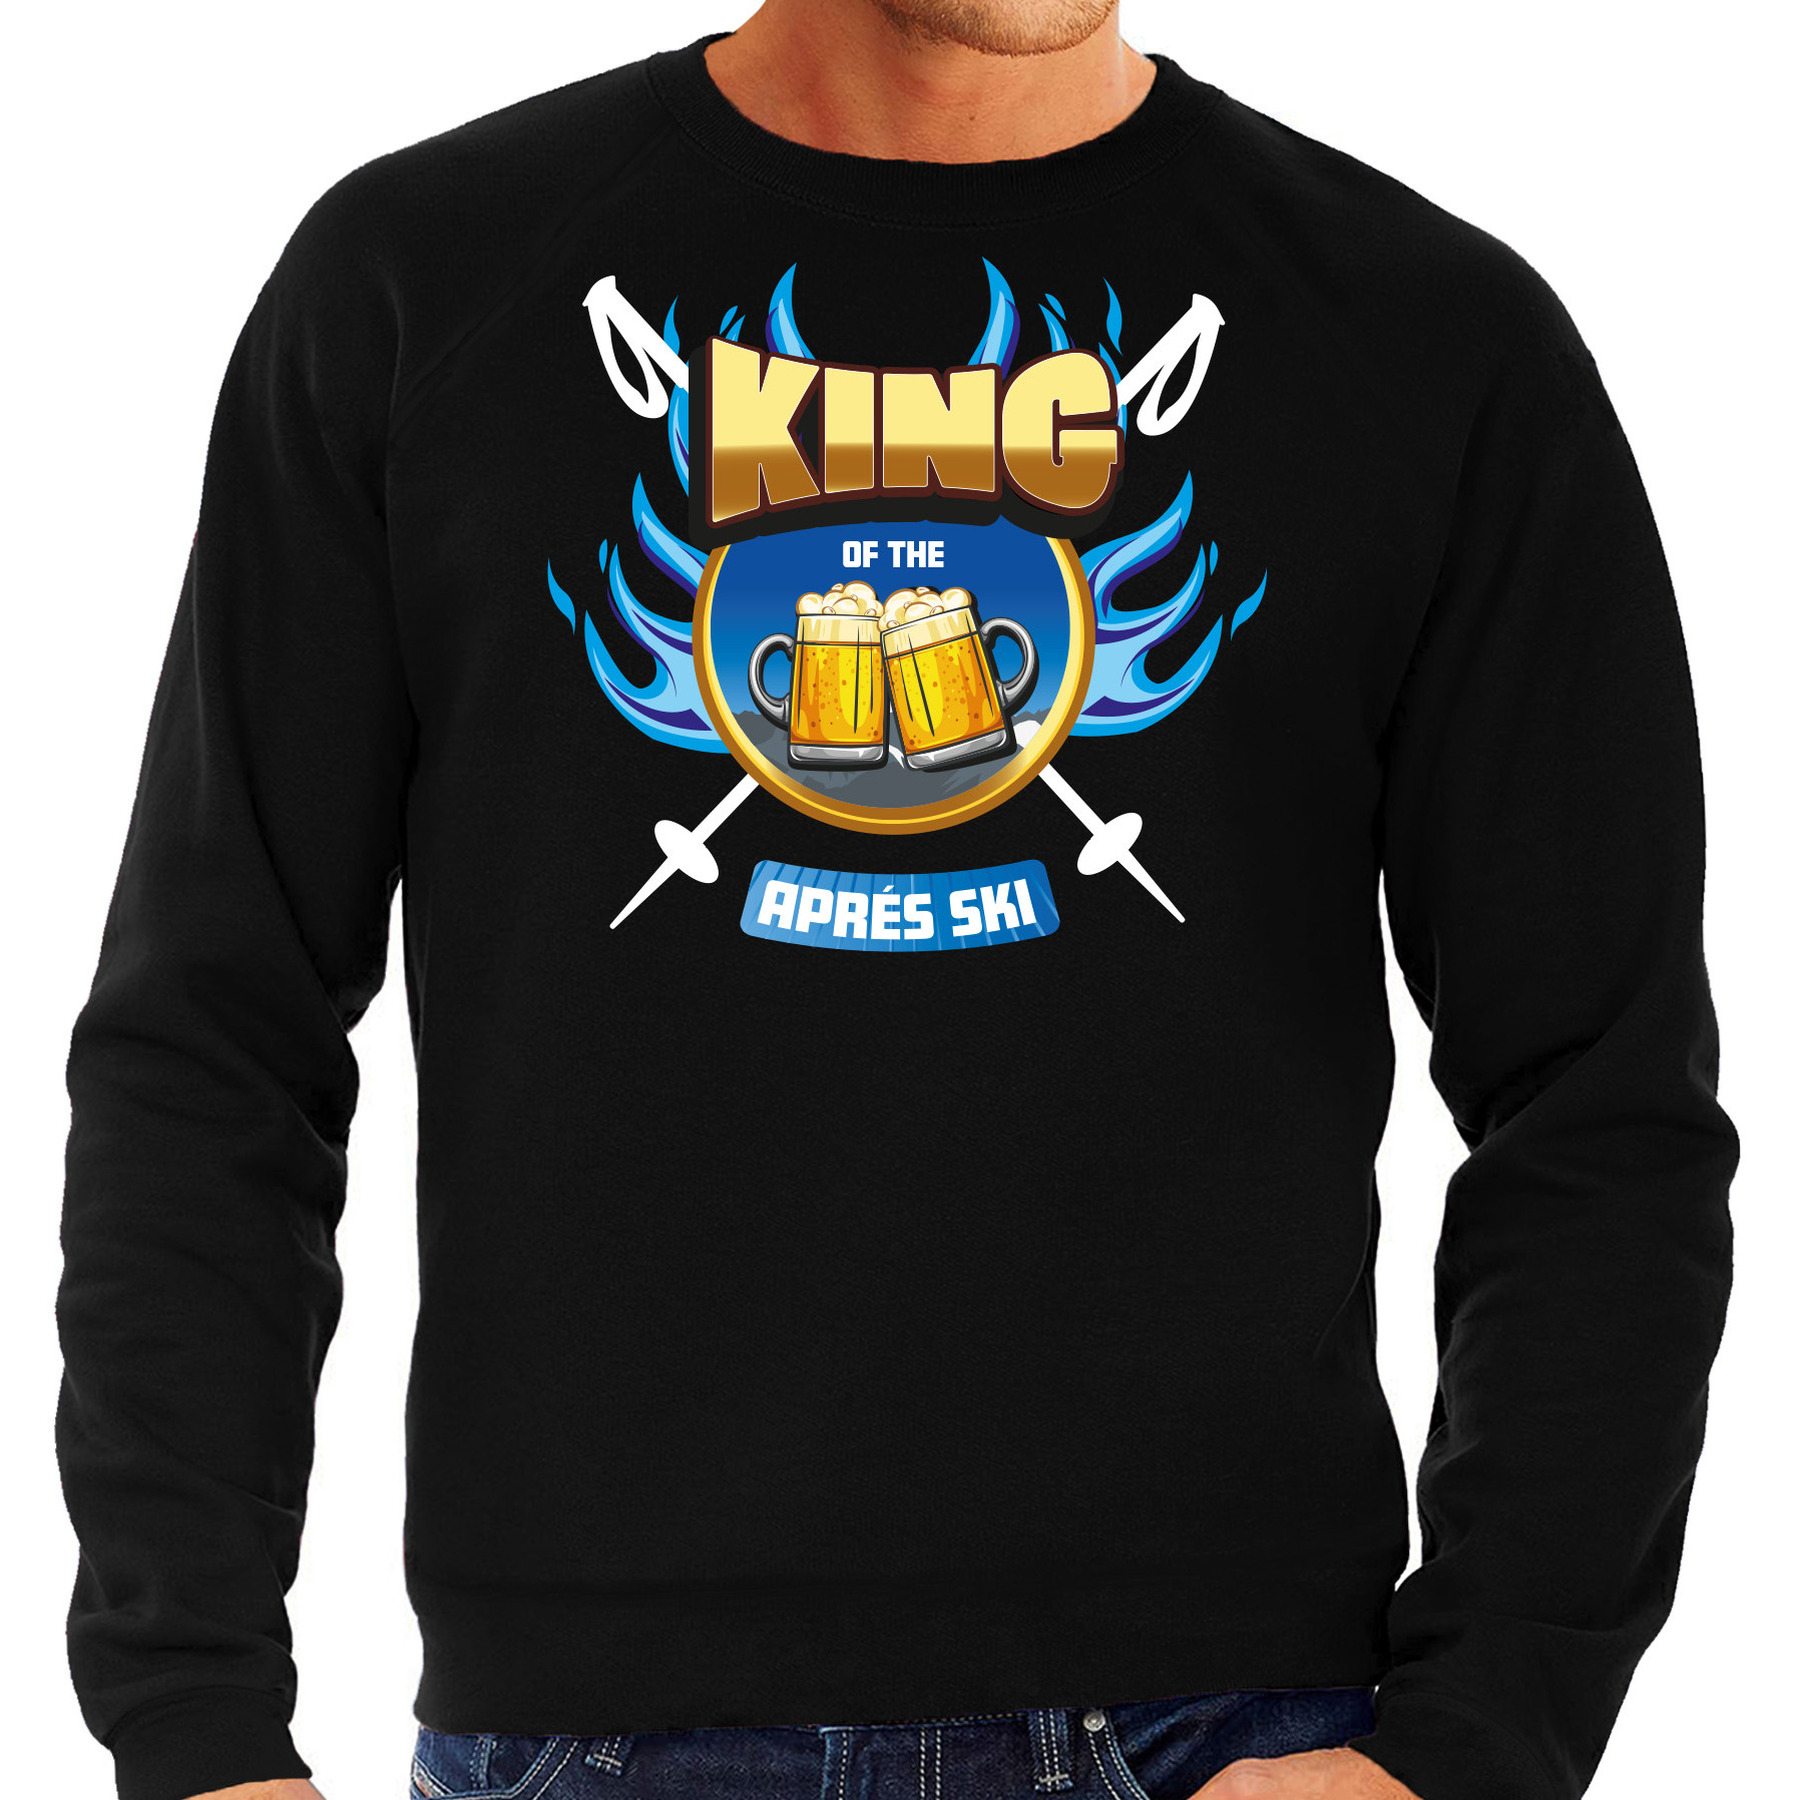 Apres ski sweater voor heren king of the apres ski zwart winter trui